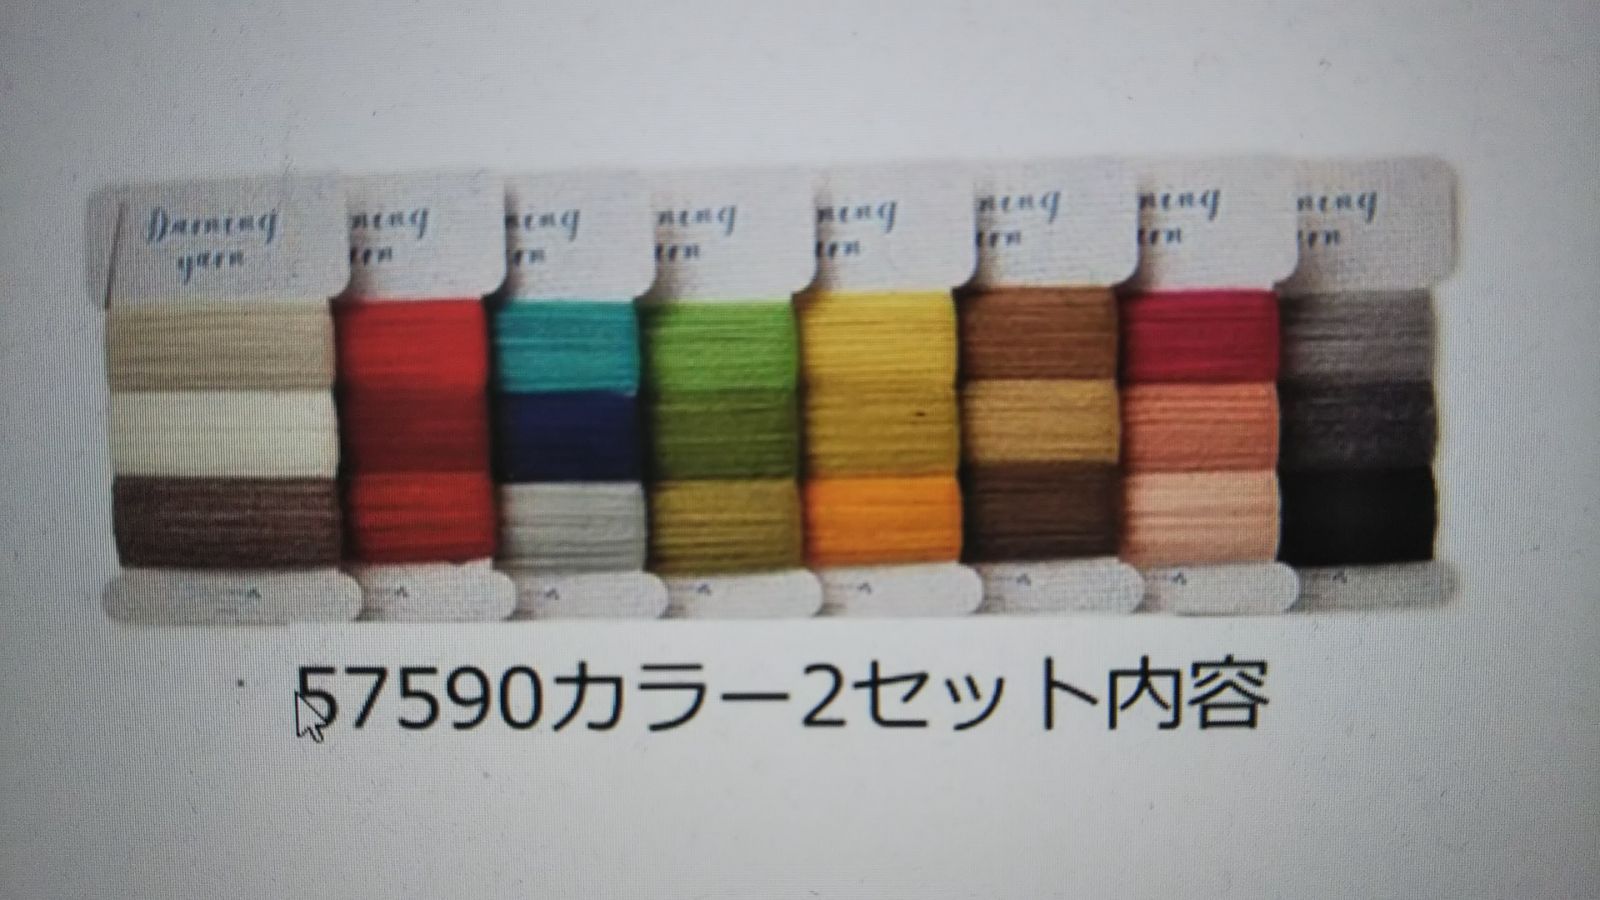 送料無料 未開封新品 クロバー ダーニング糸8巻 24色 セット カラー2